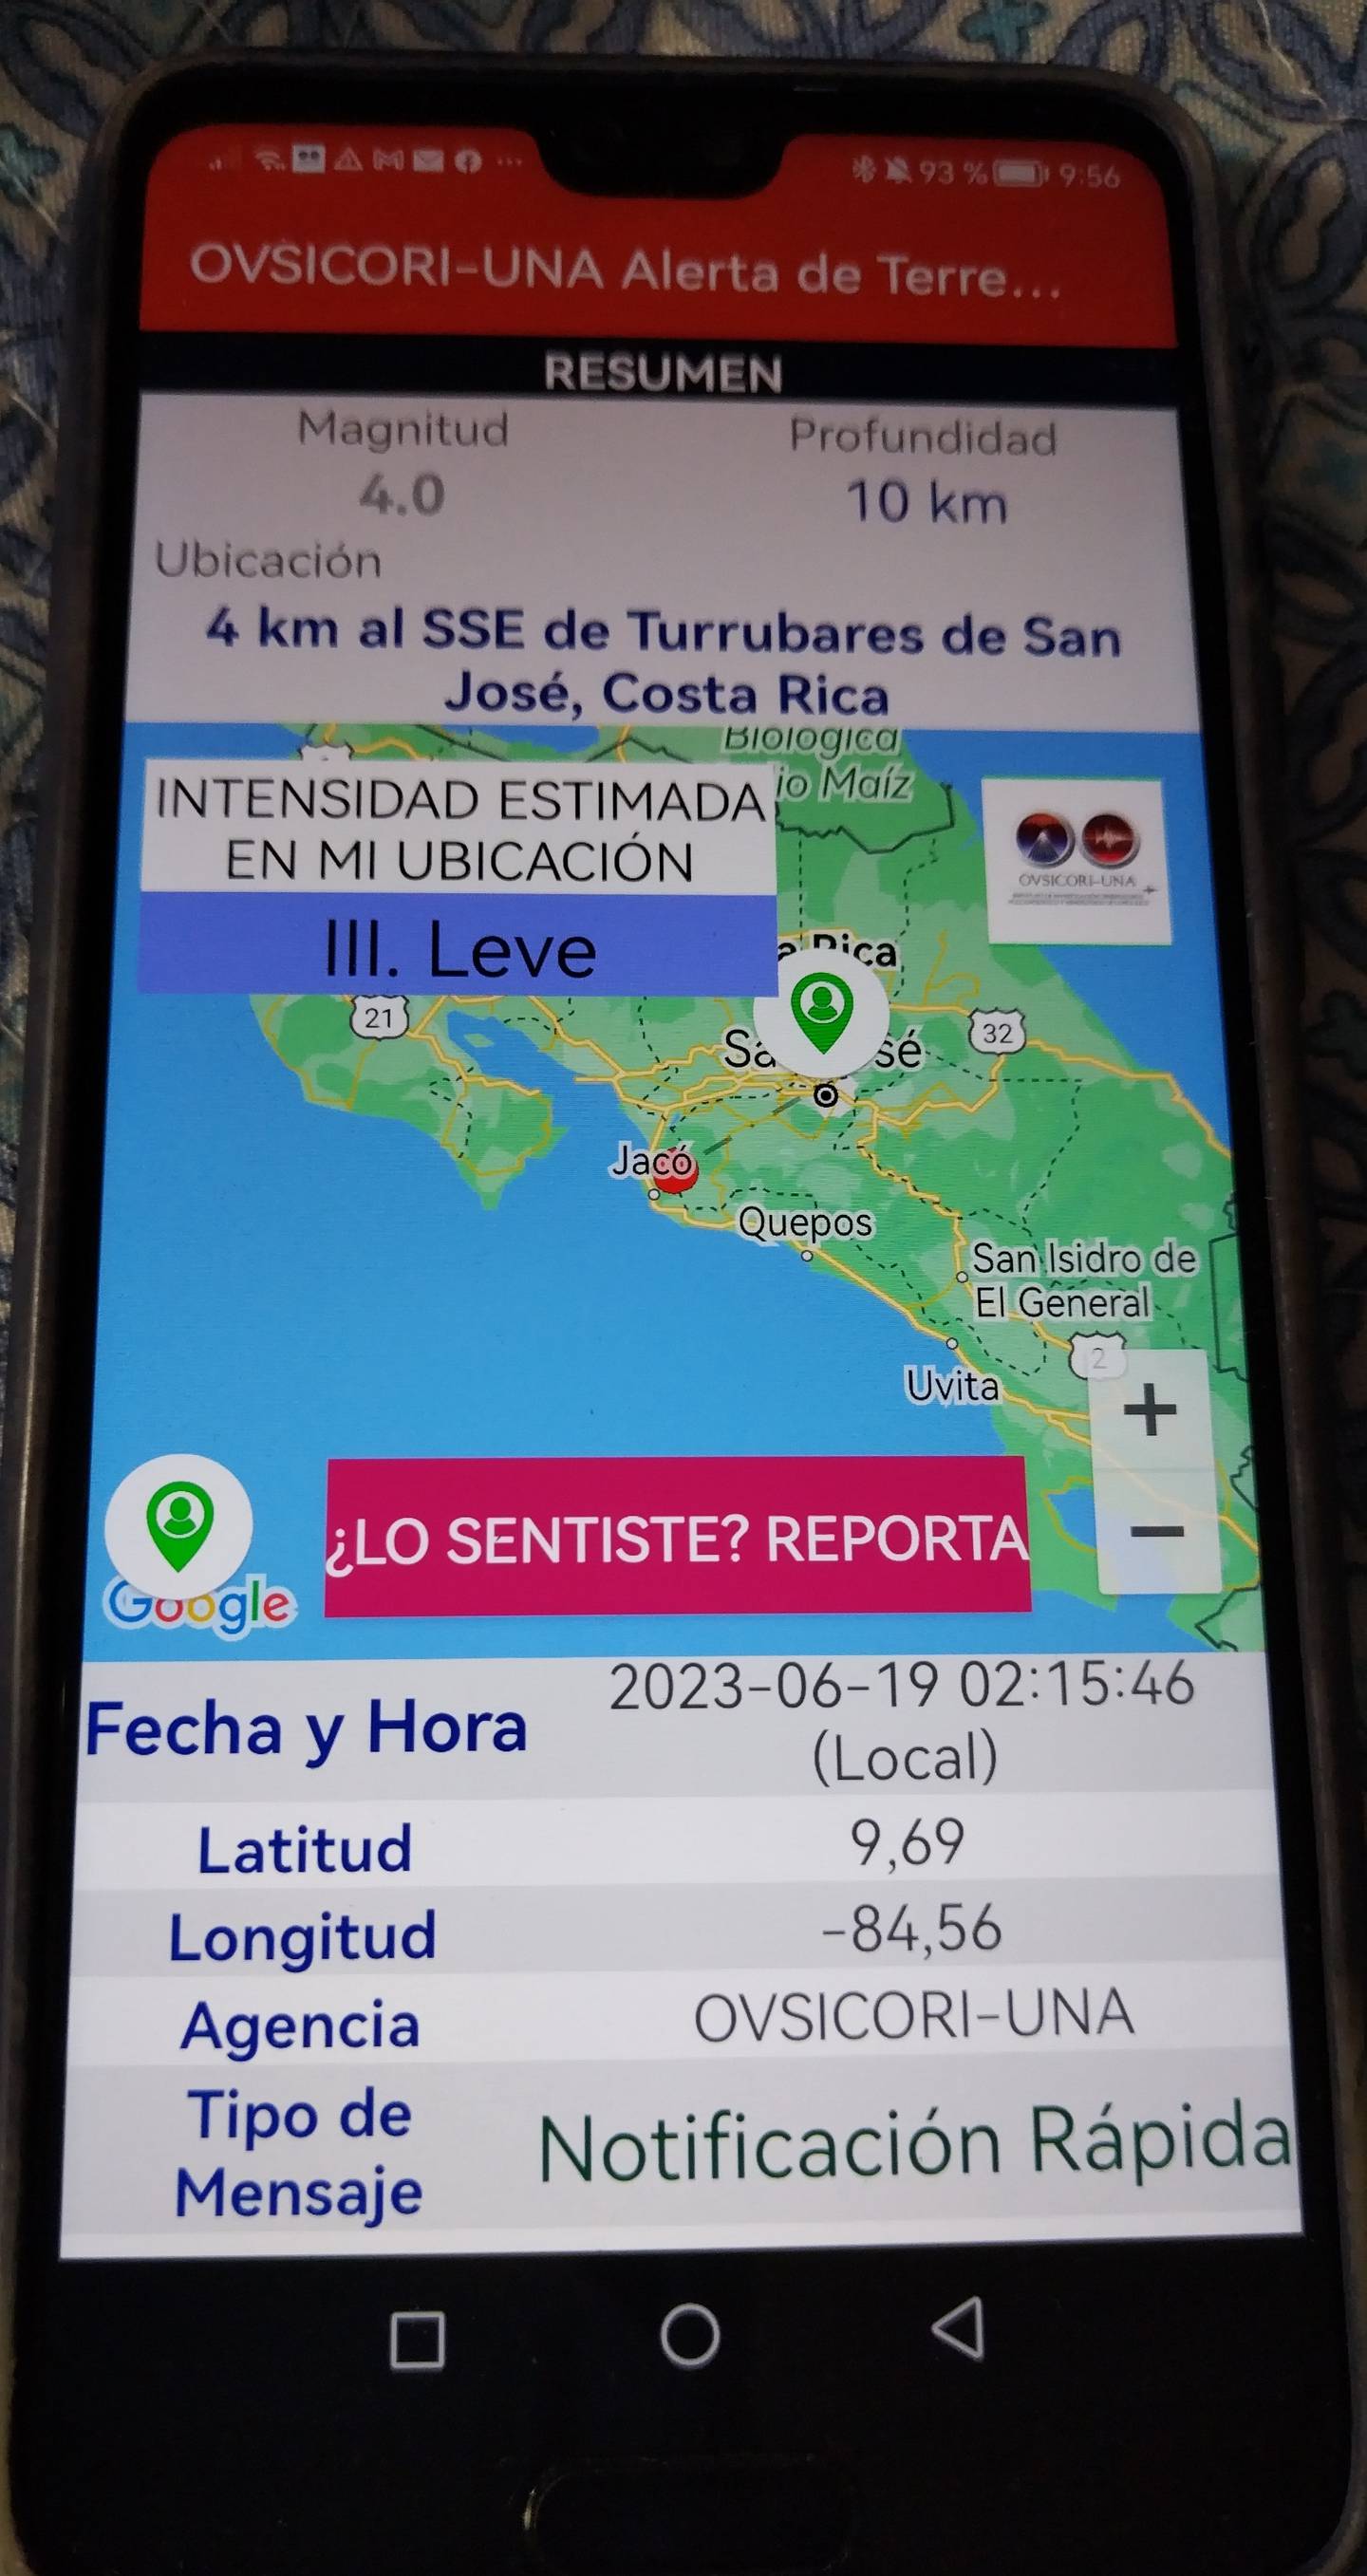 Cinco días después de que se anunció la App, ocurrió el primer sismo superior a 4, lo que implicó una alerta que hizo vibrar casi al unísono 5000 celulares. Foto: Hugo Solano